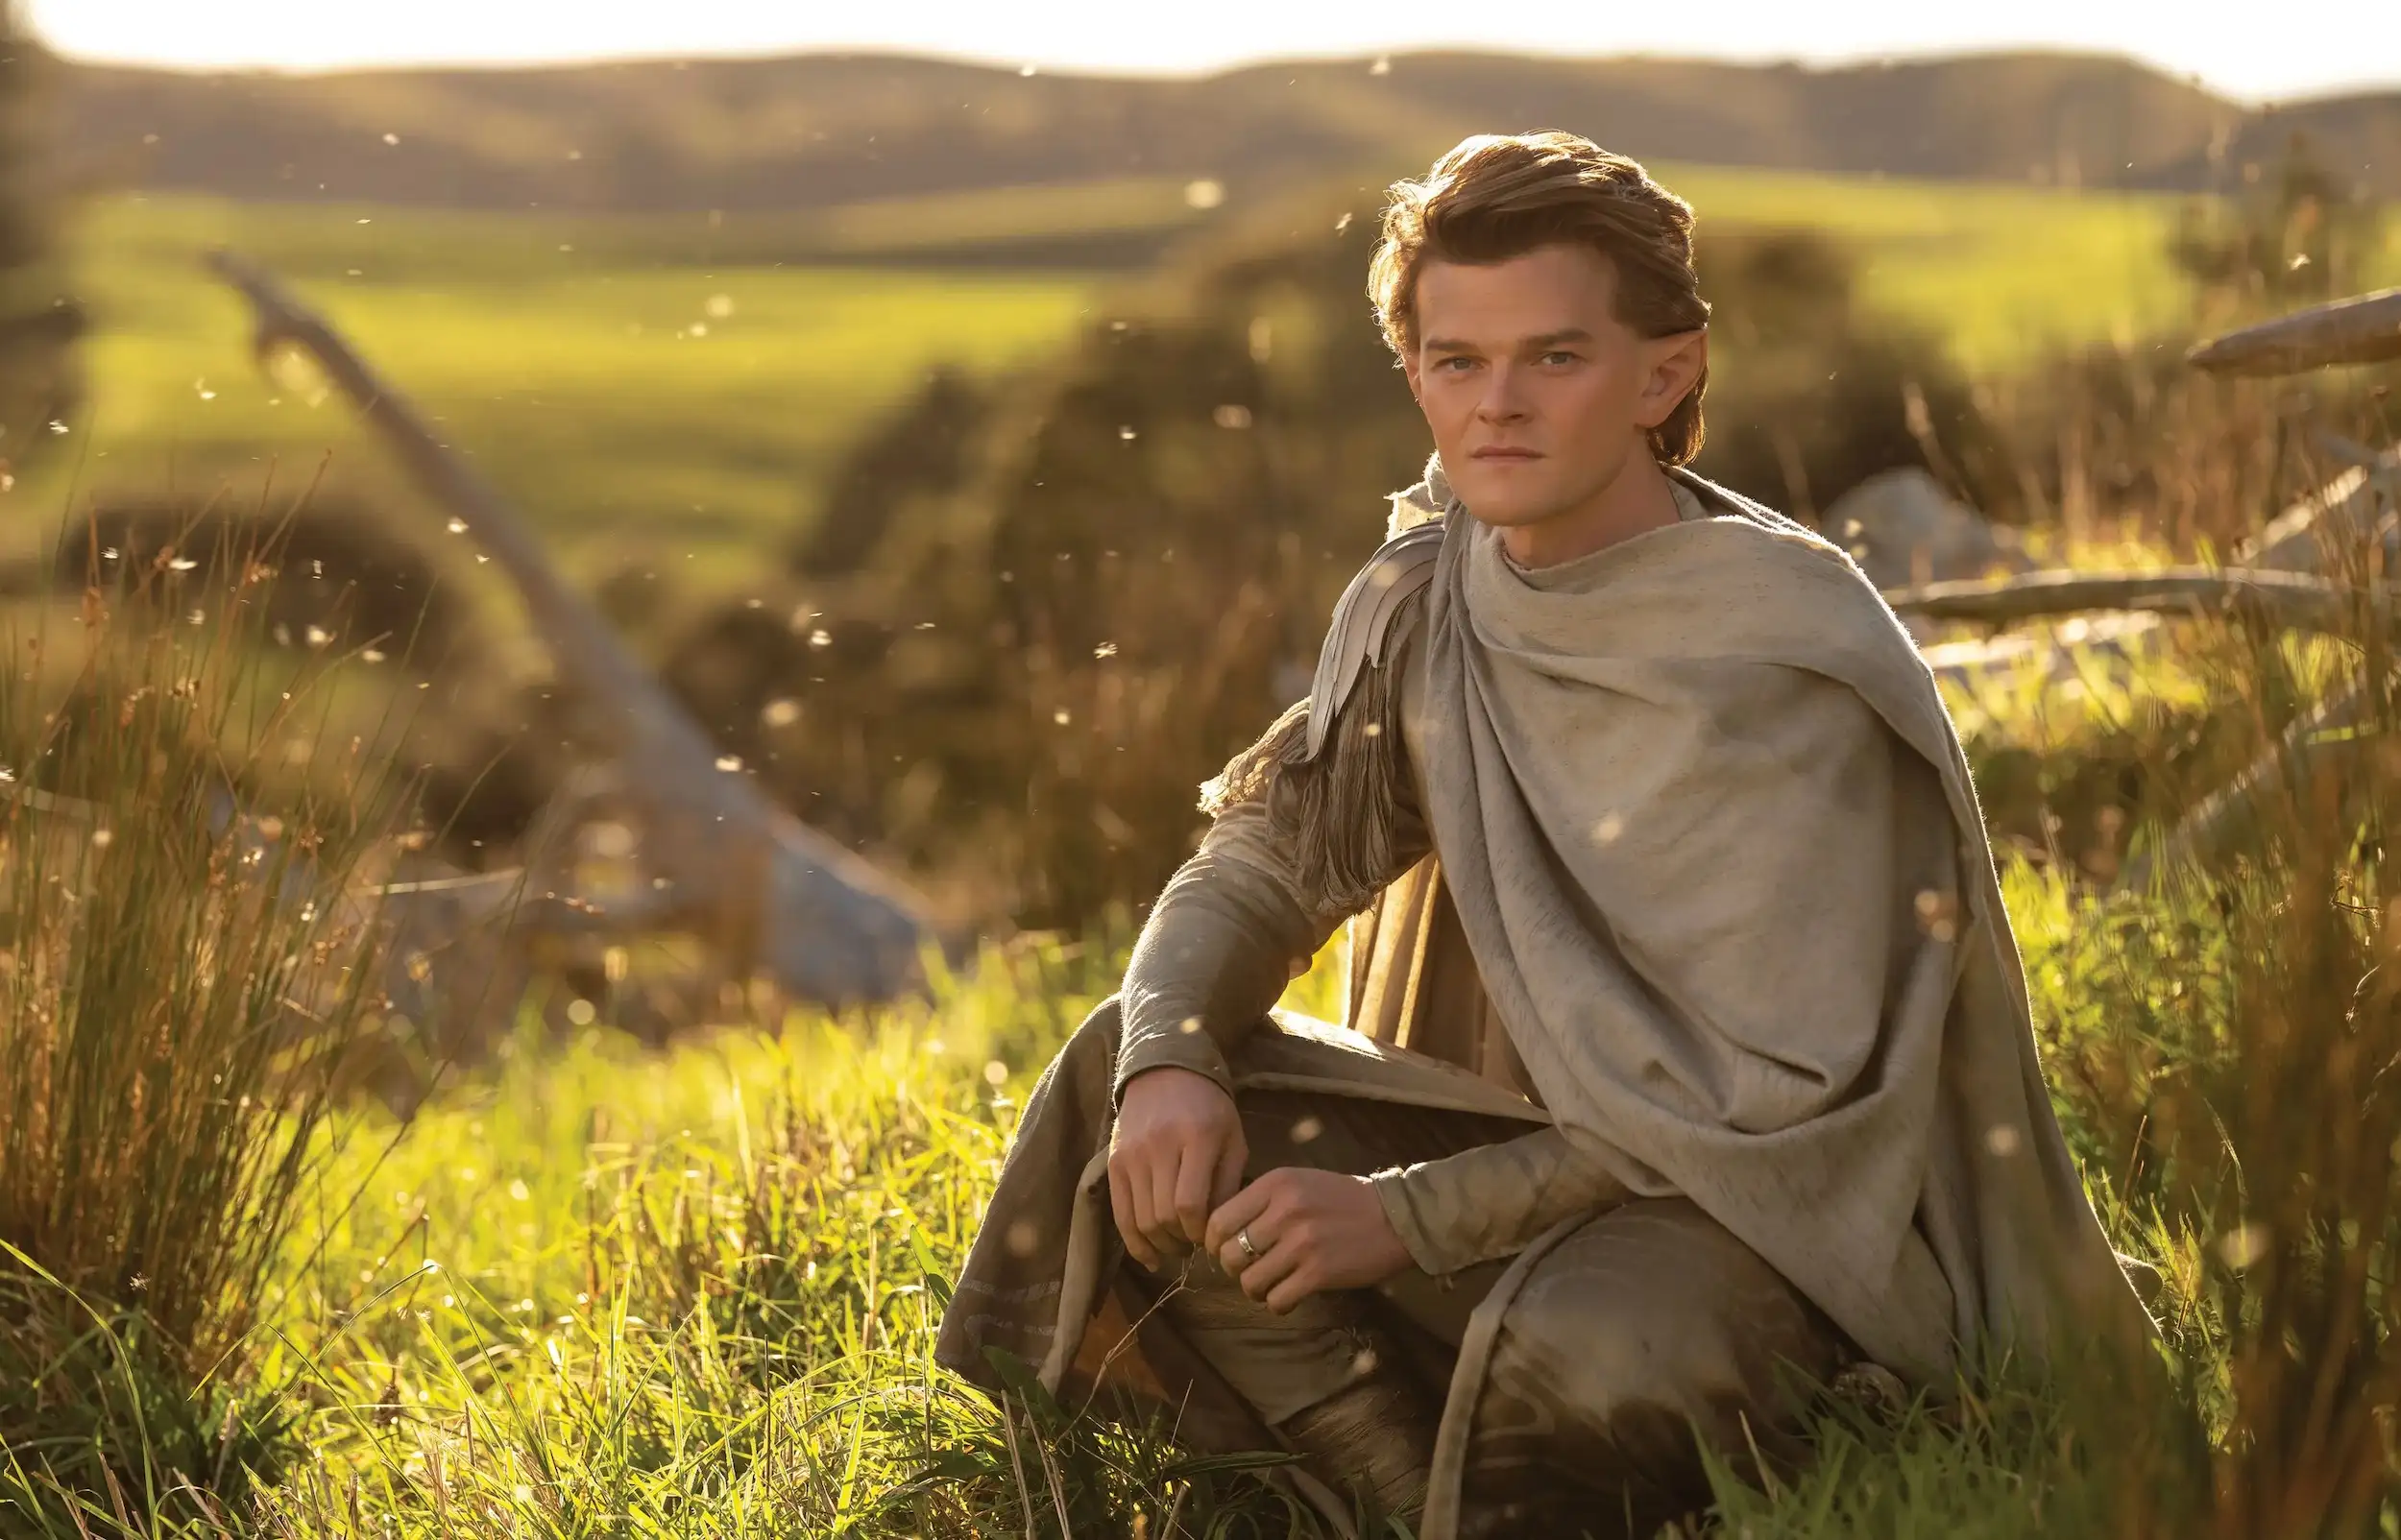 Robert Aramayo (Elrond de joven) sentado y vestido con túnica elfica